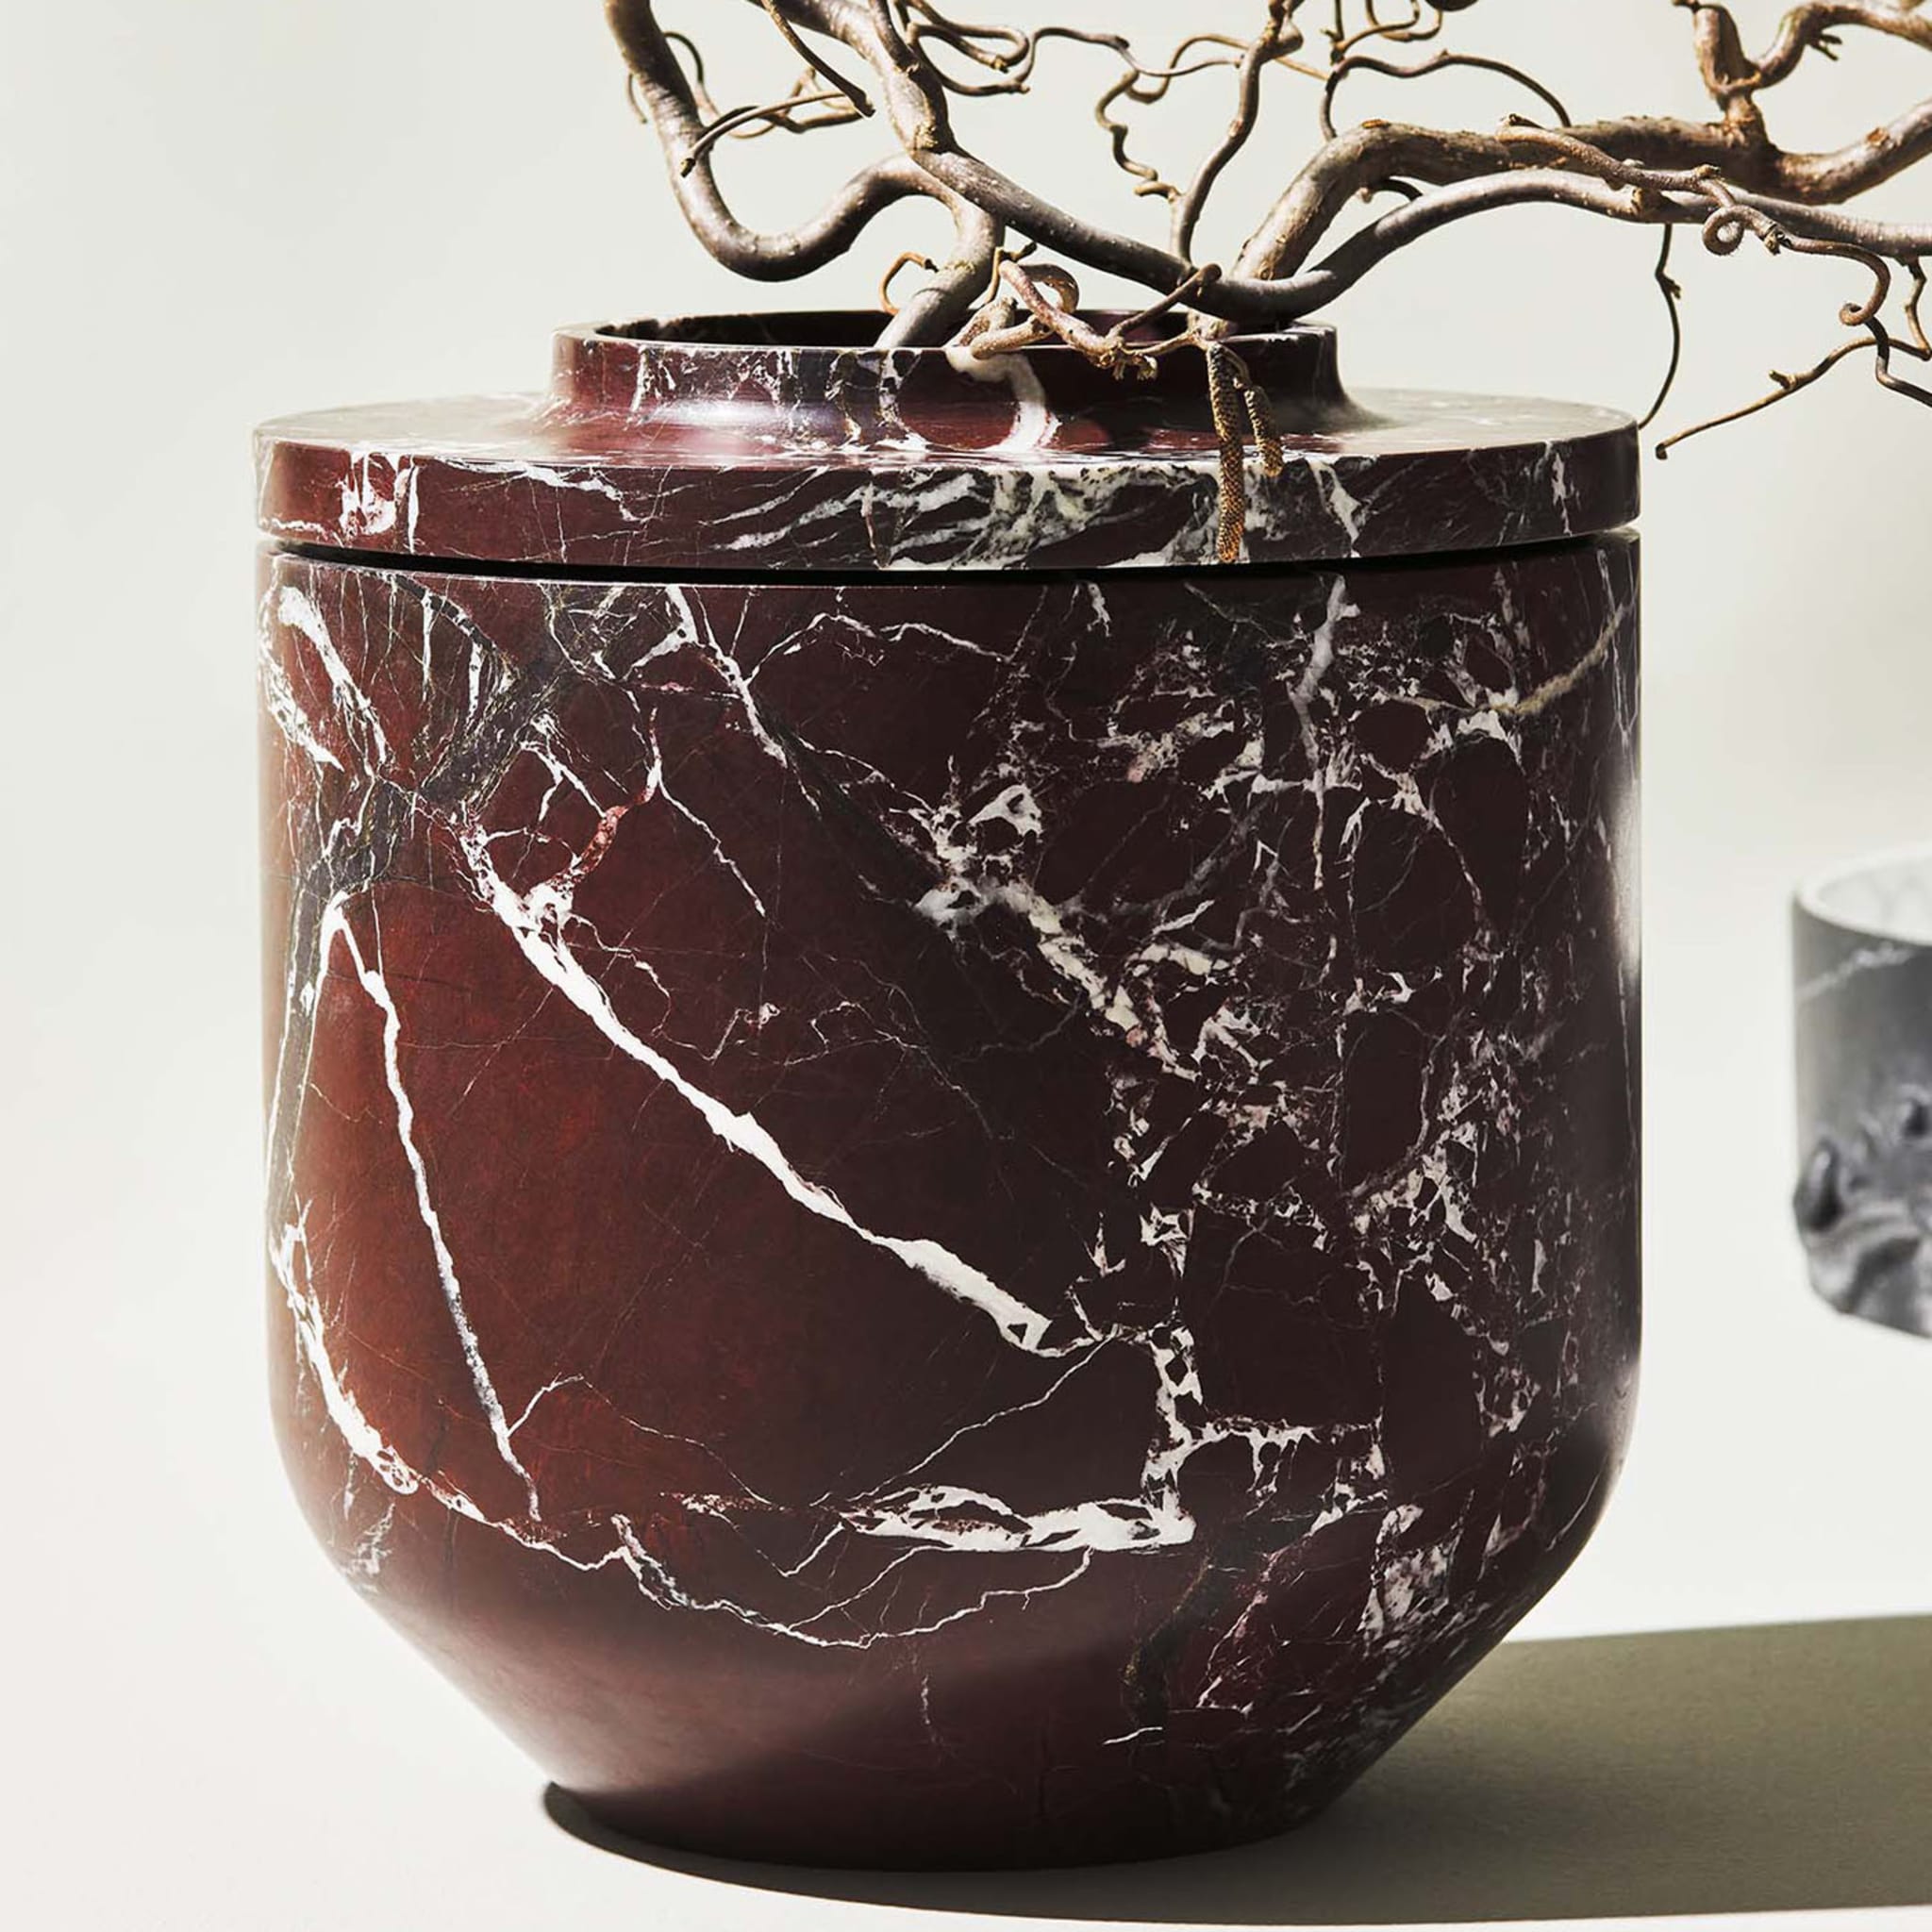 Königliche große burgunderfarbene vase von Christophe Pillet - Alternative Ansicht 1